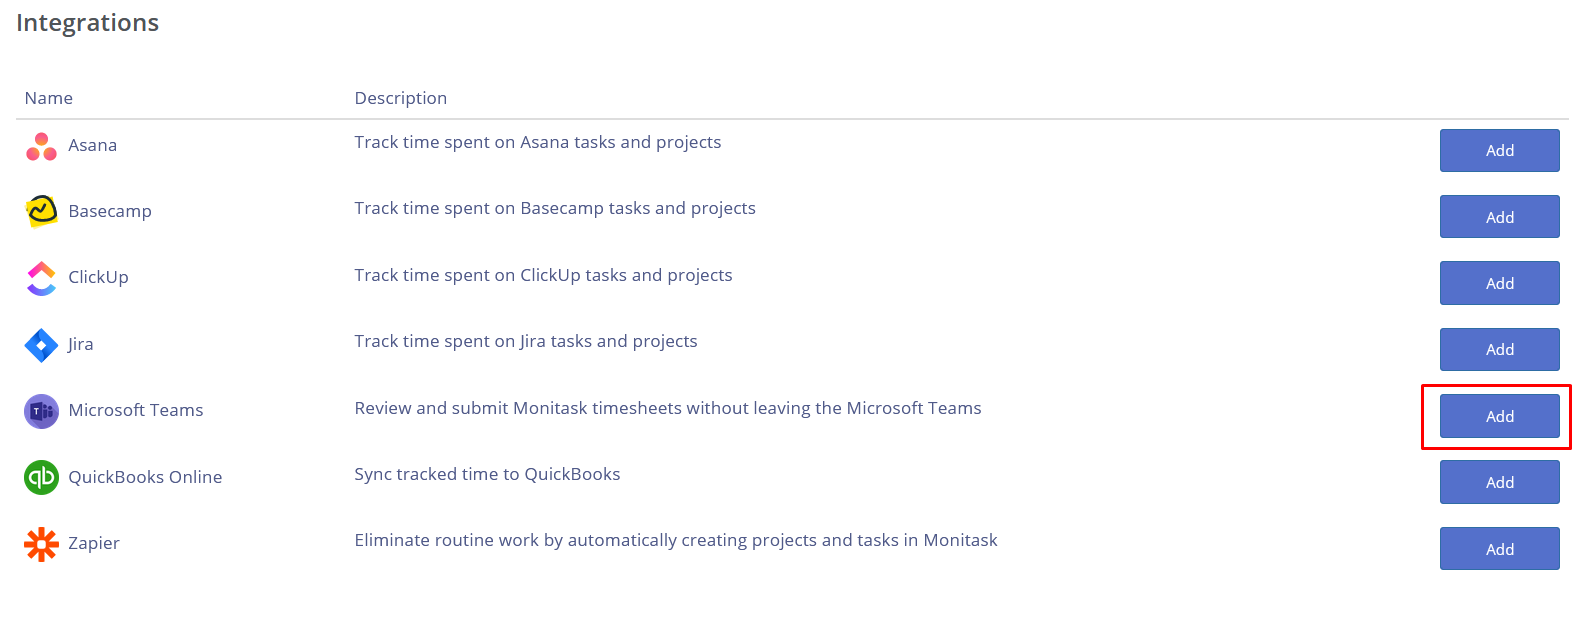 Microsoft Teams integration with Monitask - Monitask